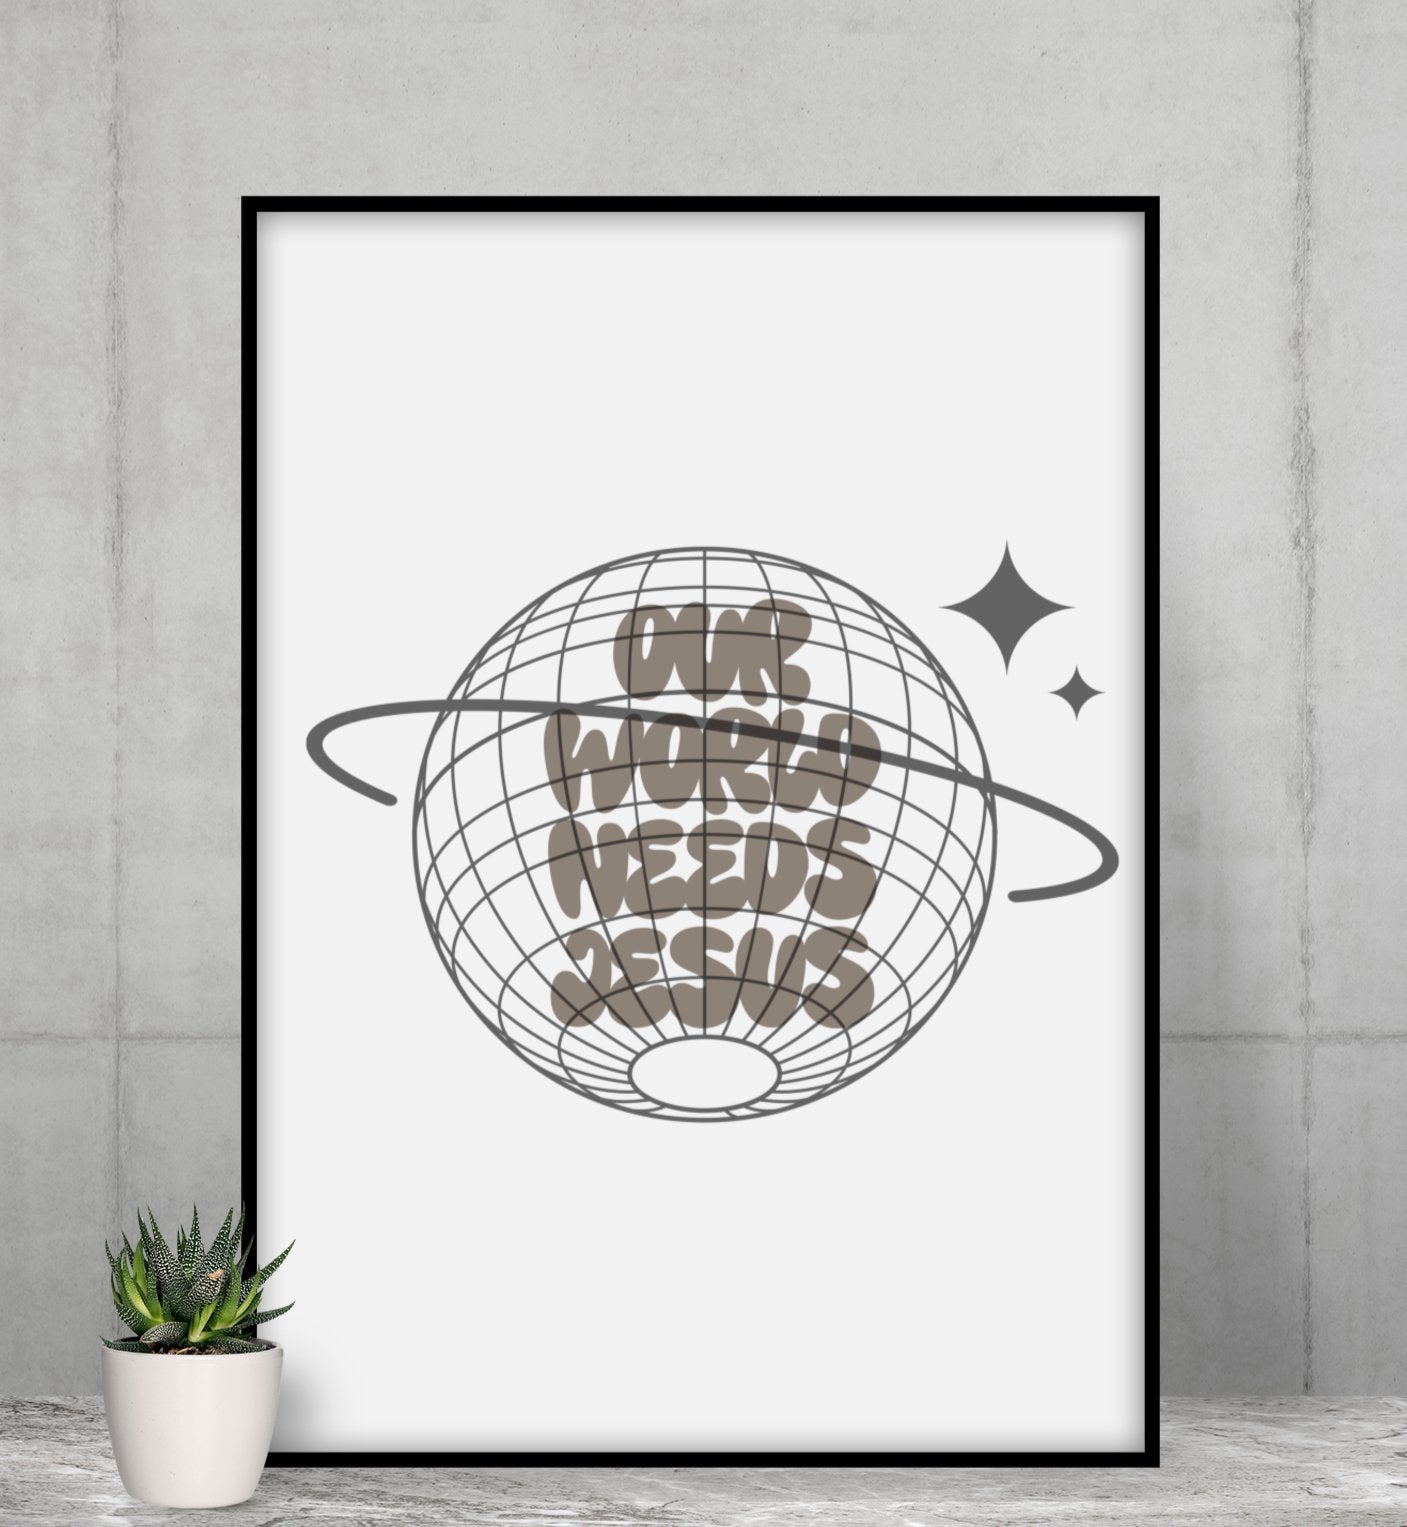 Unsere Welt braucht Jesus Poster - Make-Hope